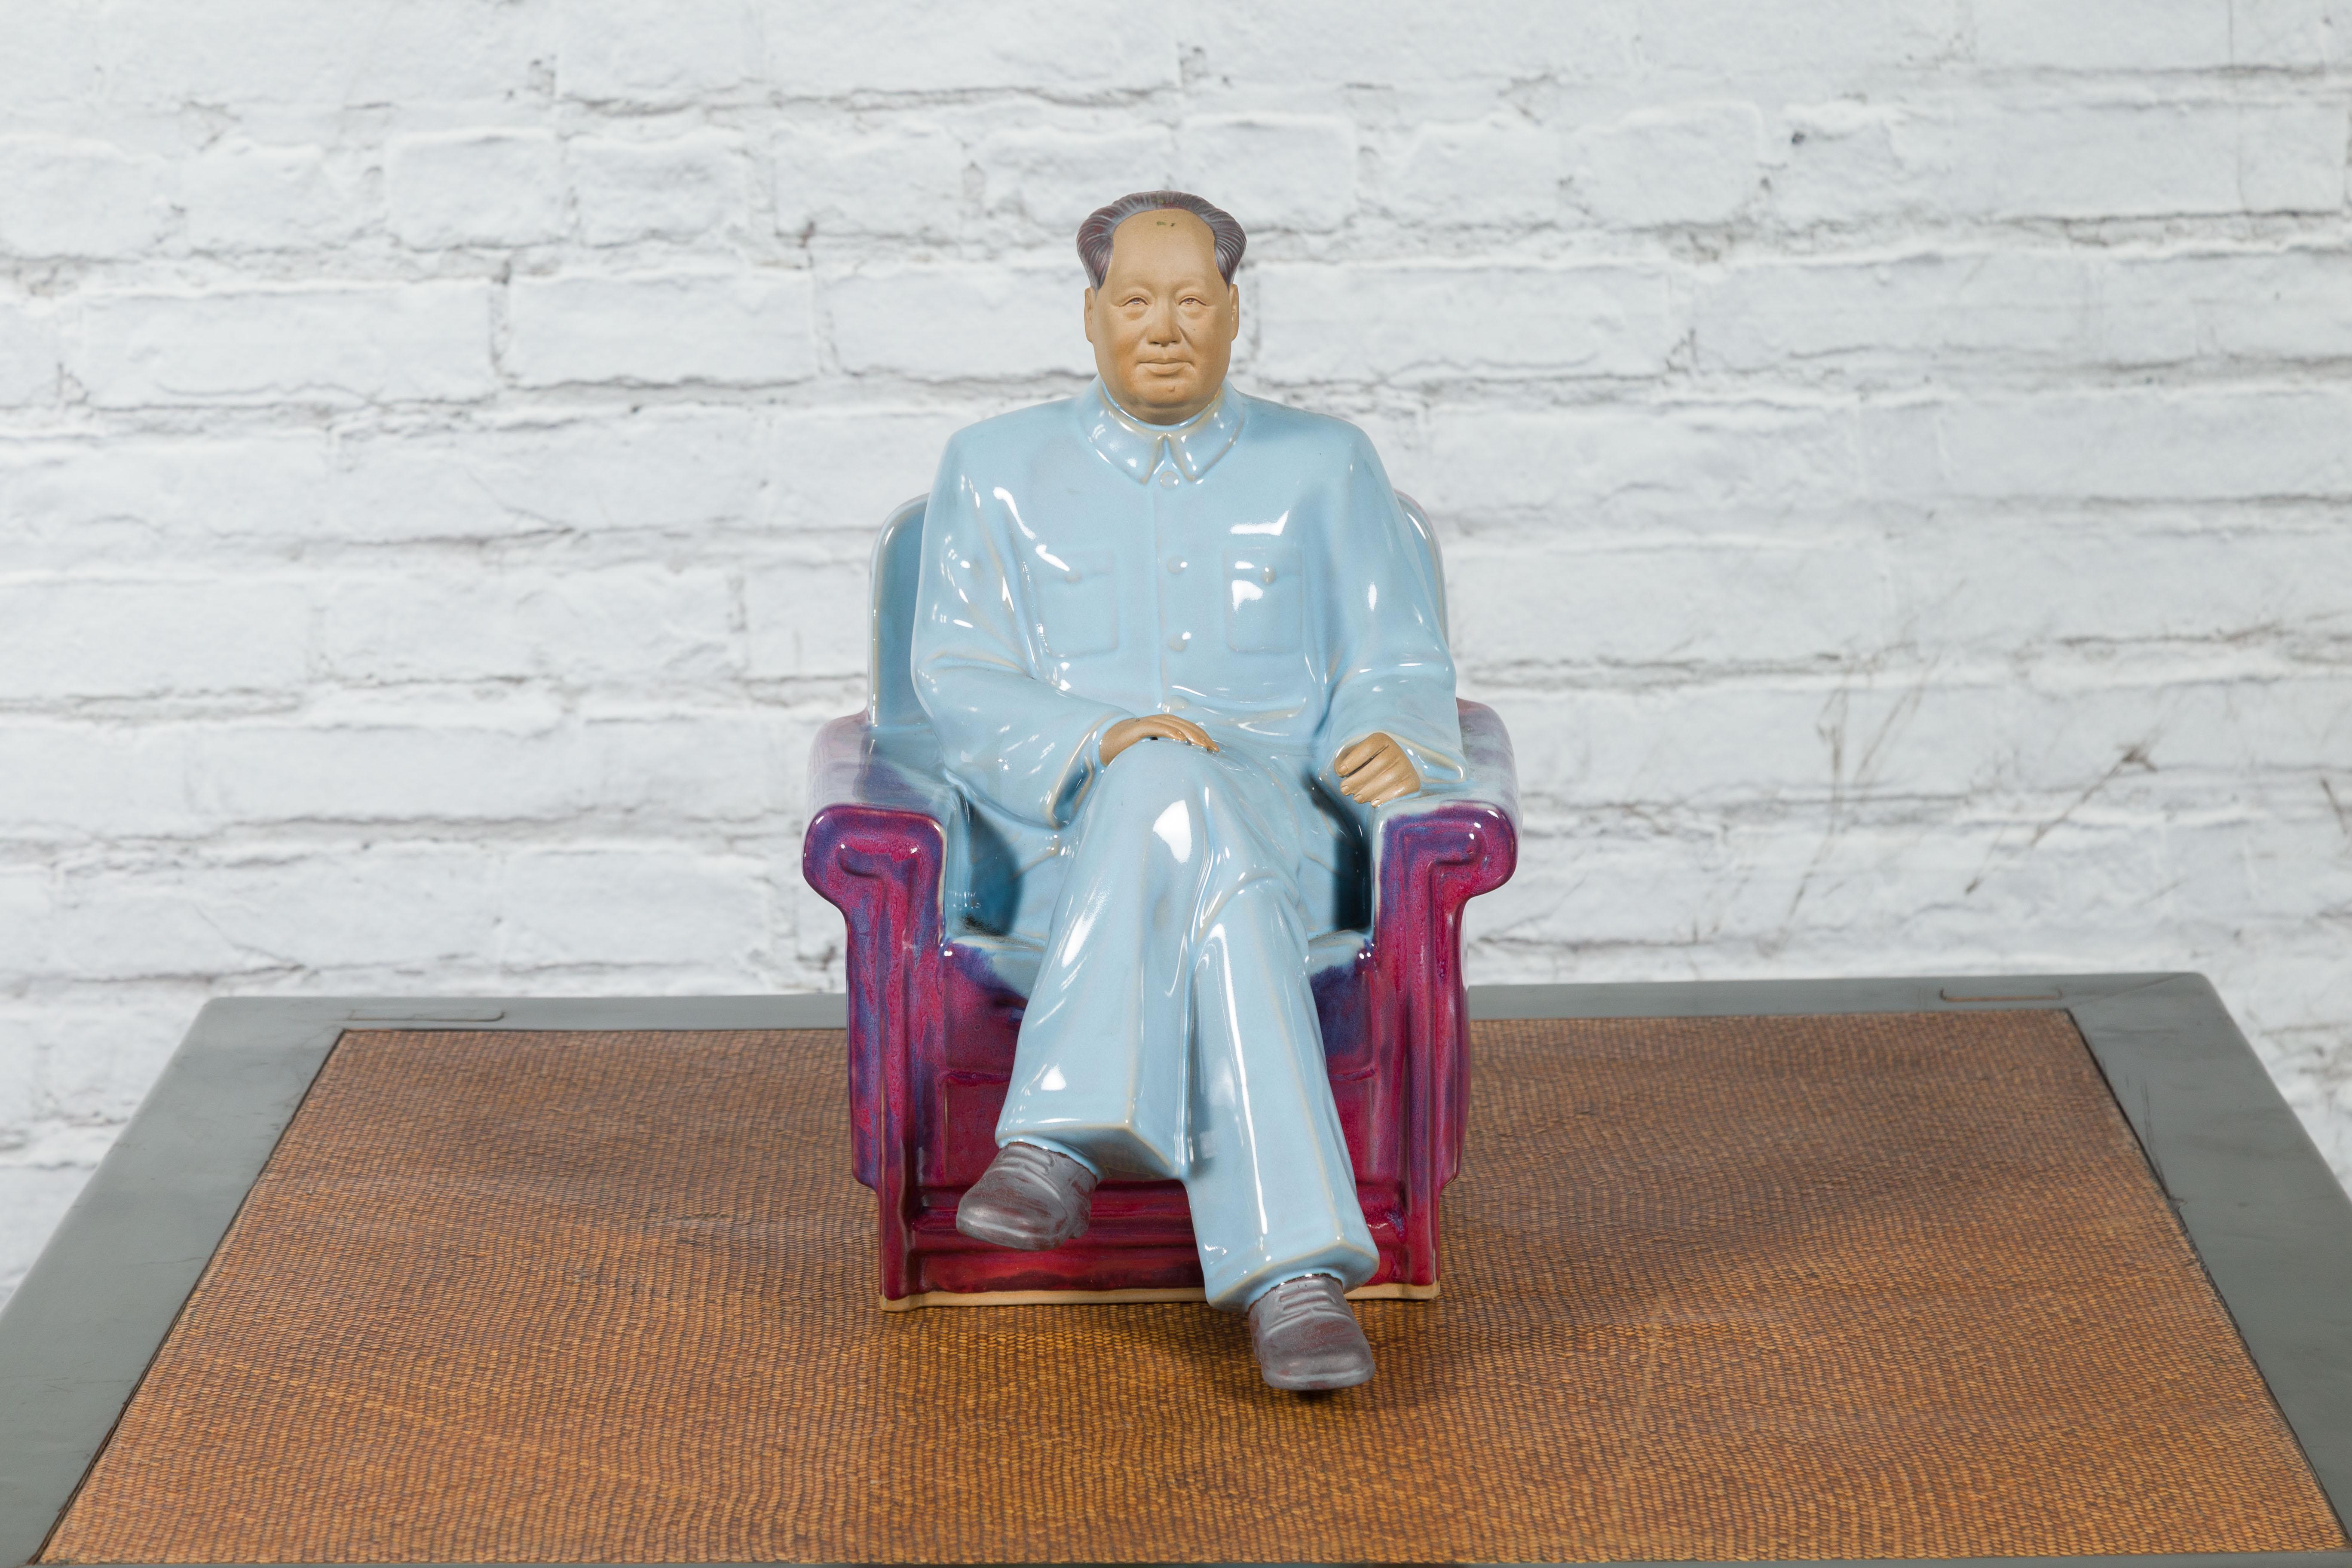 Eine chinesische Porzellanstatuette von Mao Zedong aus dem späten 20. Jahrhundert, die ihn auf einem Sessel sitzend darstellt, mit violetter und blauer Glasur im Juni-Stil. Diese Porzellanfigur wurde im letzten Viertel des 20. Jahrhunderts in China